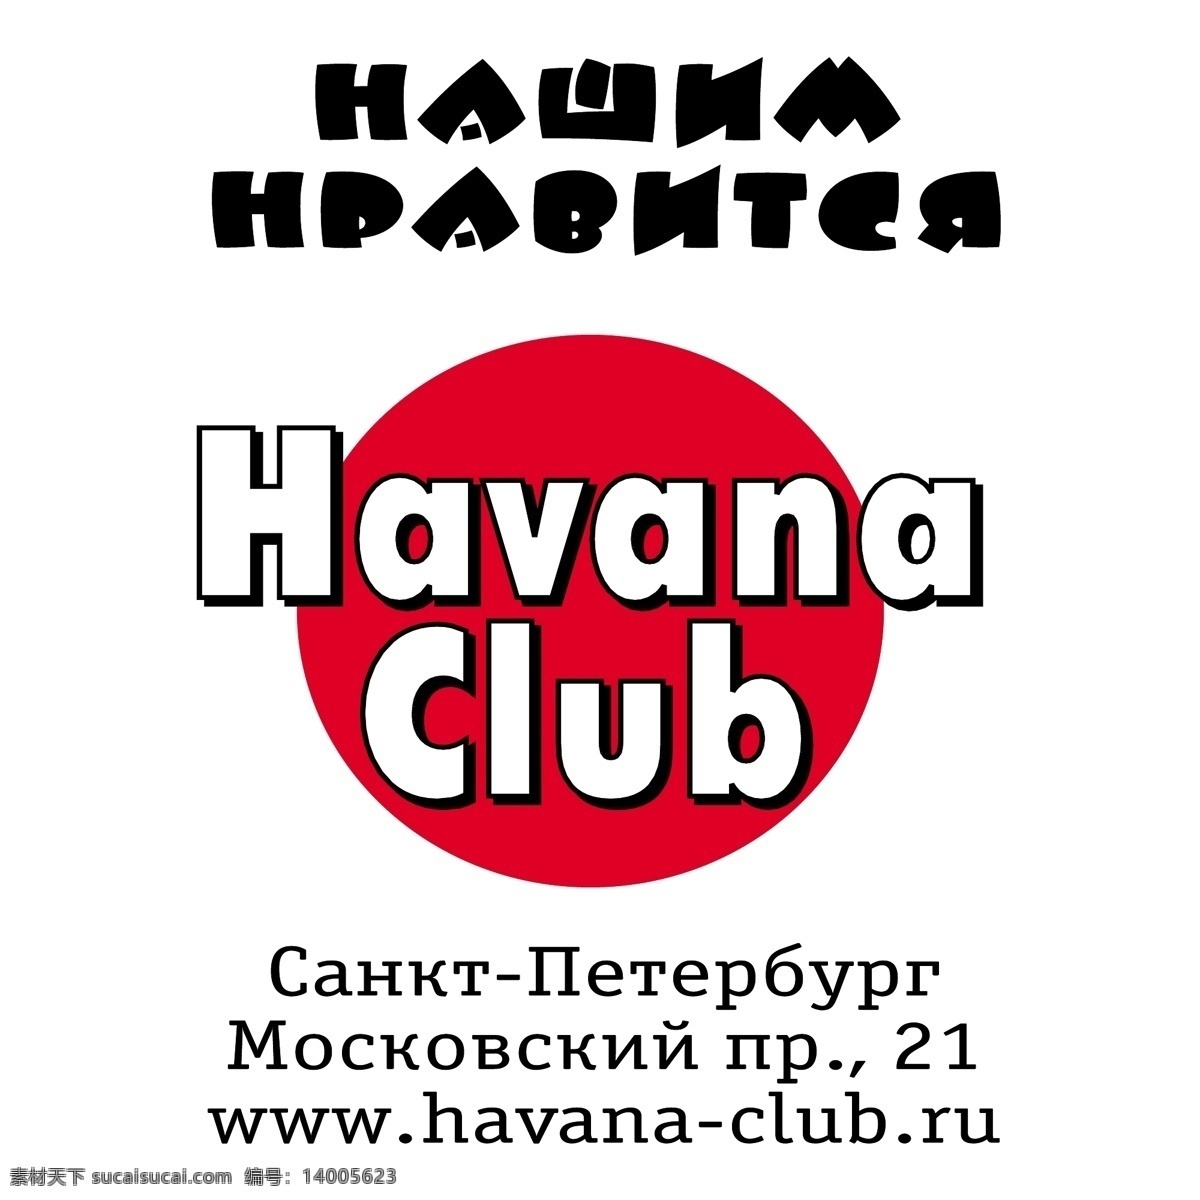 俱乐部 古巴 哈瓦那俱乐部 哈瓦那 图形 矢量 免费 俱乐部的自由 自由 向量 向量的俱乐部 俱乐部的照片 艺术 载体 建筑家居